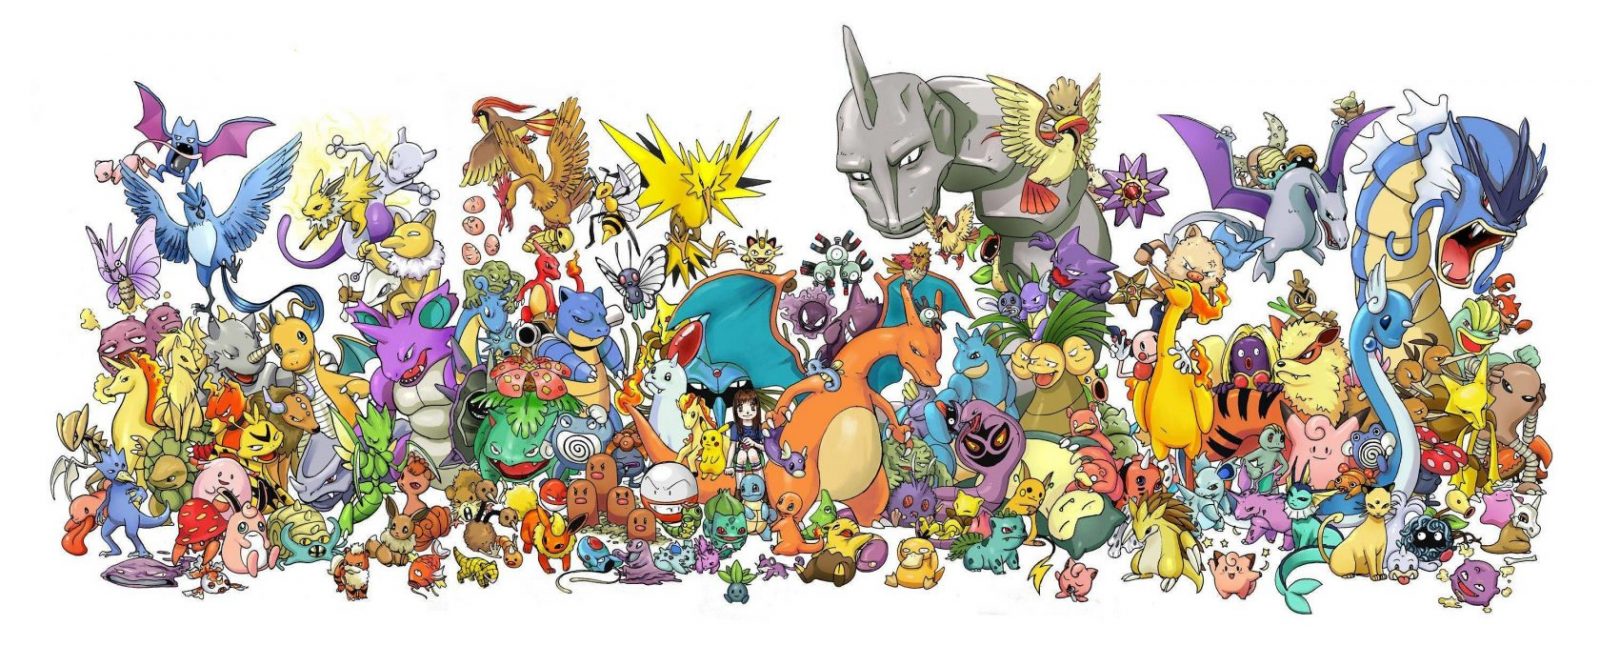 Der (Pokémon-) Wahnsinn - bereits über 300 Millionen verkaufte Spiele weltweit